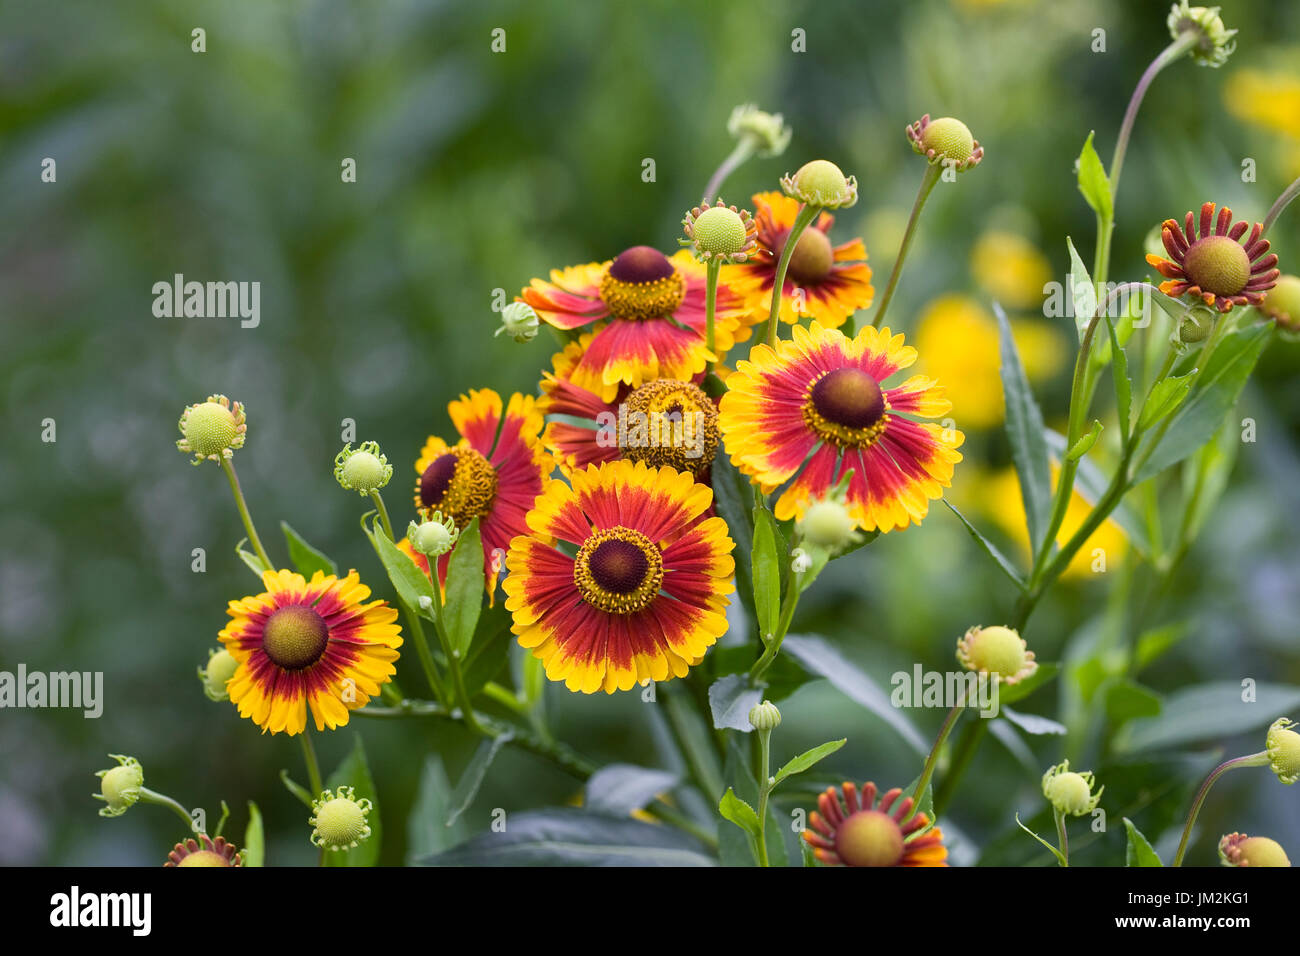 Helenium Autumnale 'Sunshine hybrids mixed' flowers. Stock Photo